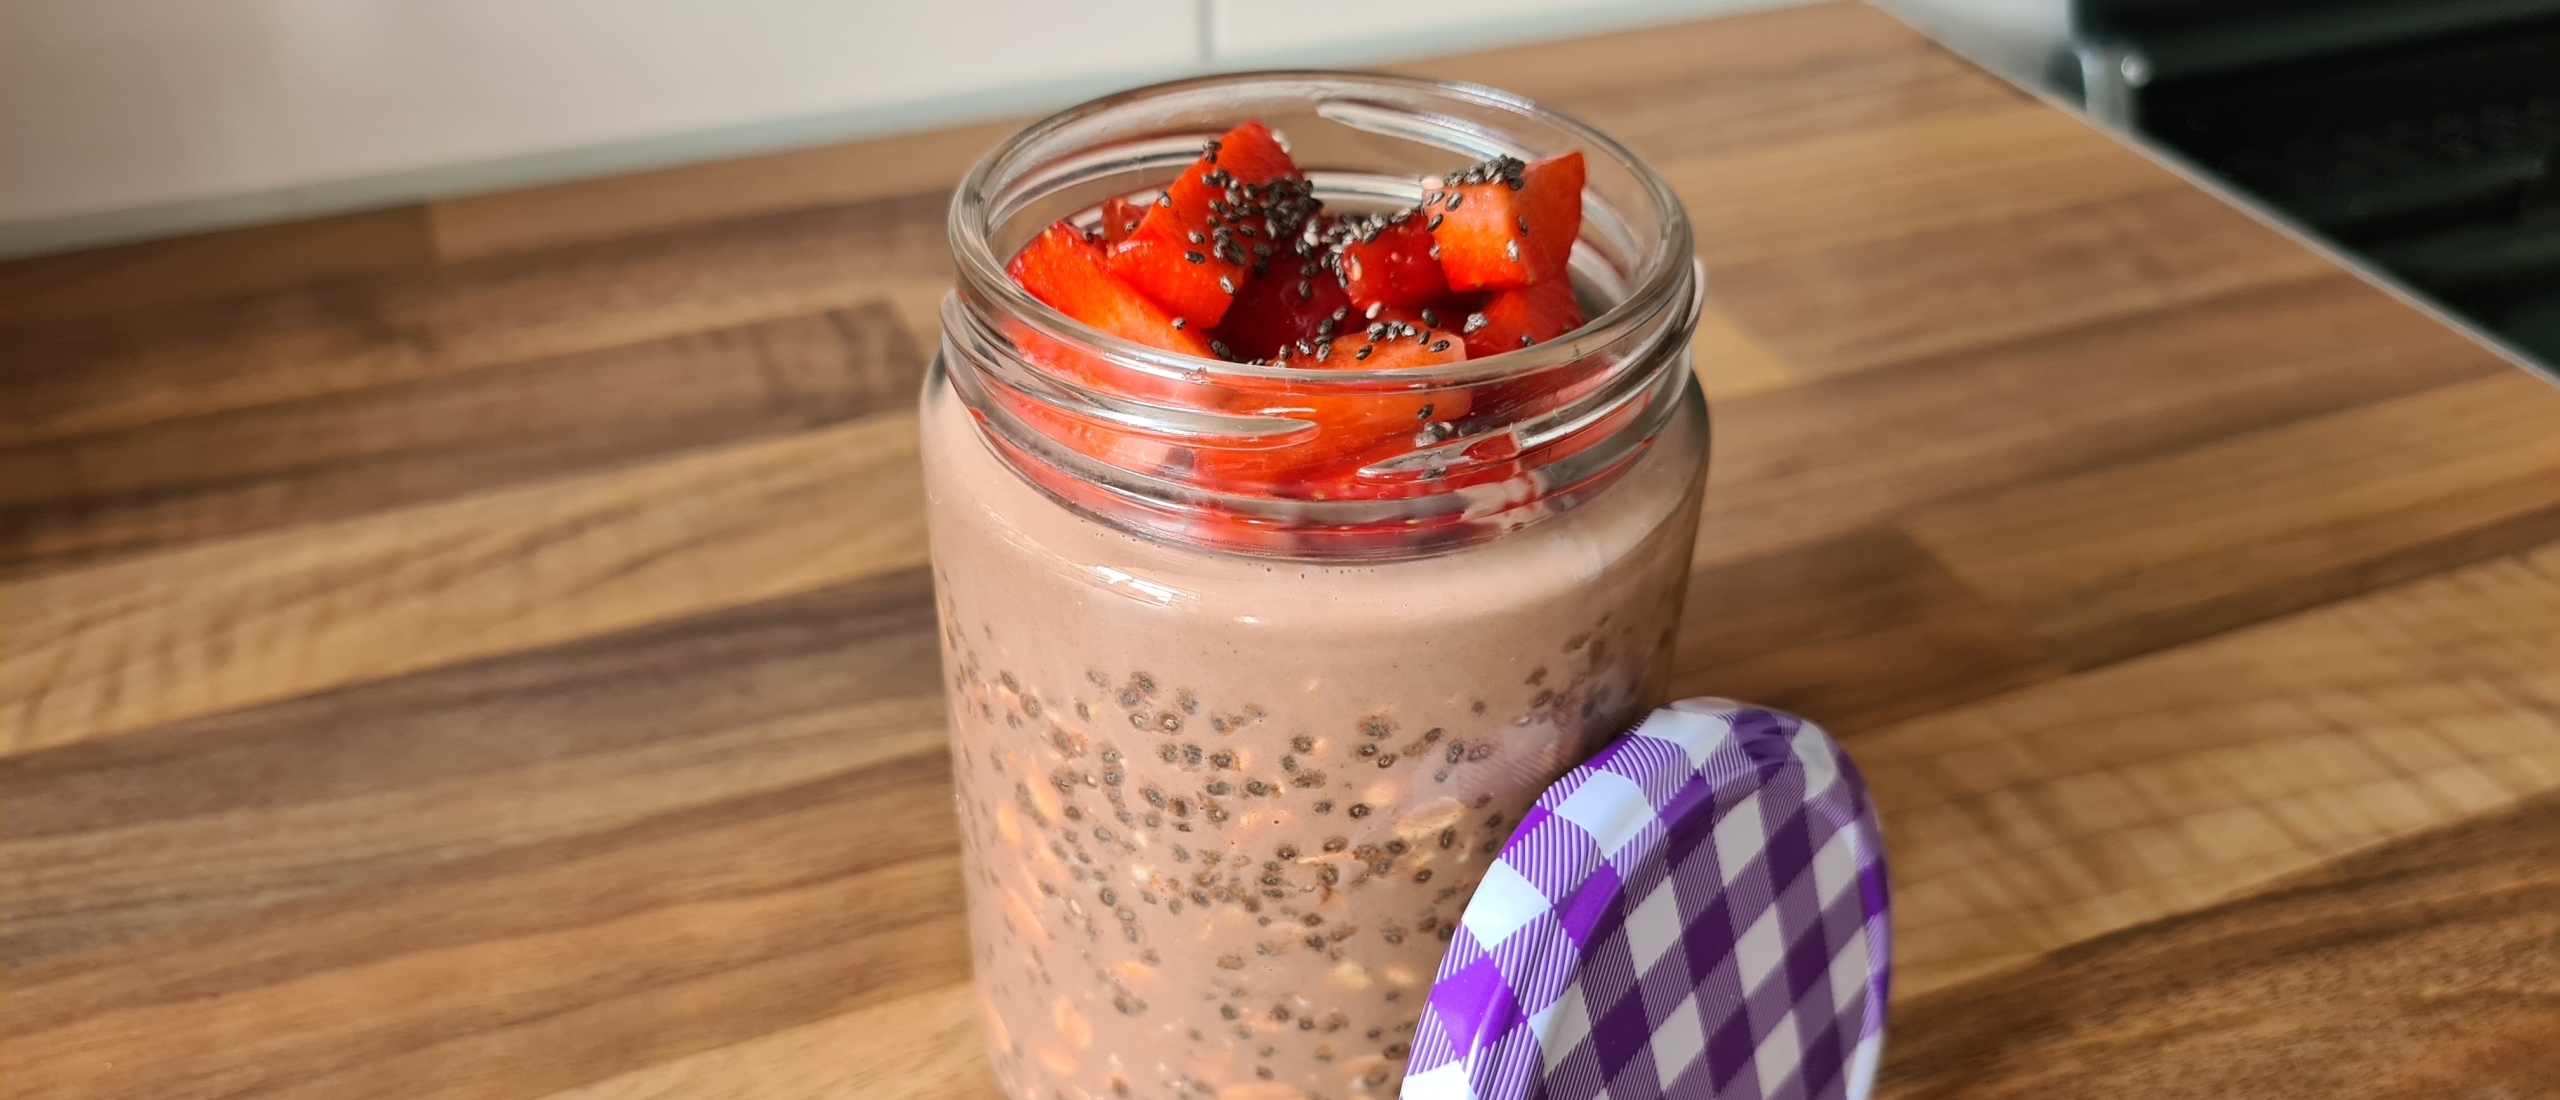 Overnight chocolade oats met chiazaad en aardbeien Recept aankomen Recepten voor gewichtstoename